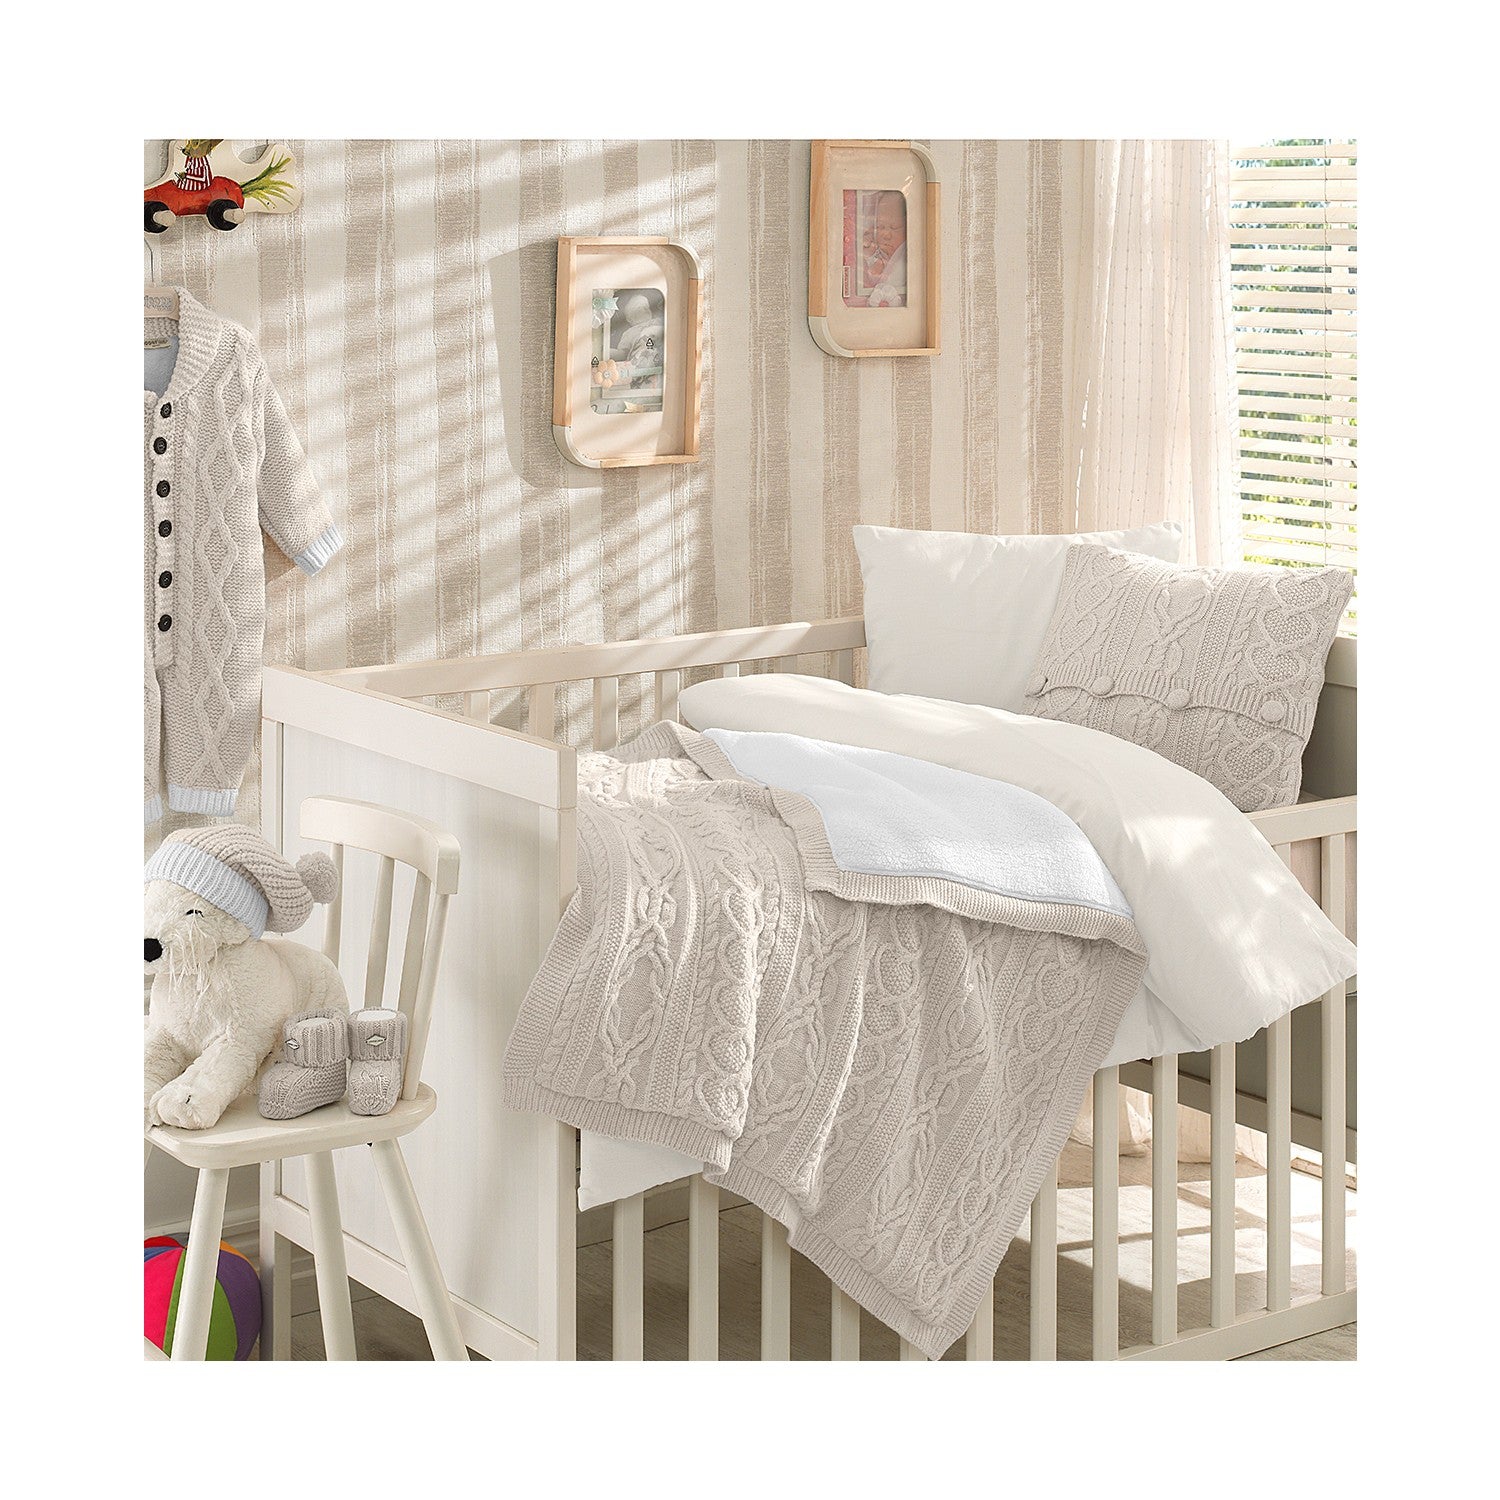 Merino Wool Blended Cot Bedding Set Unisex New Baby Gift